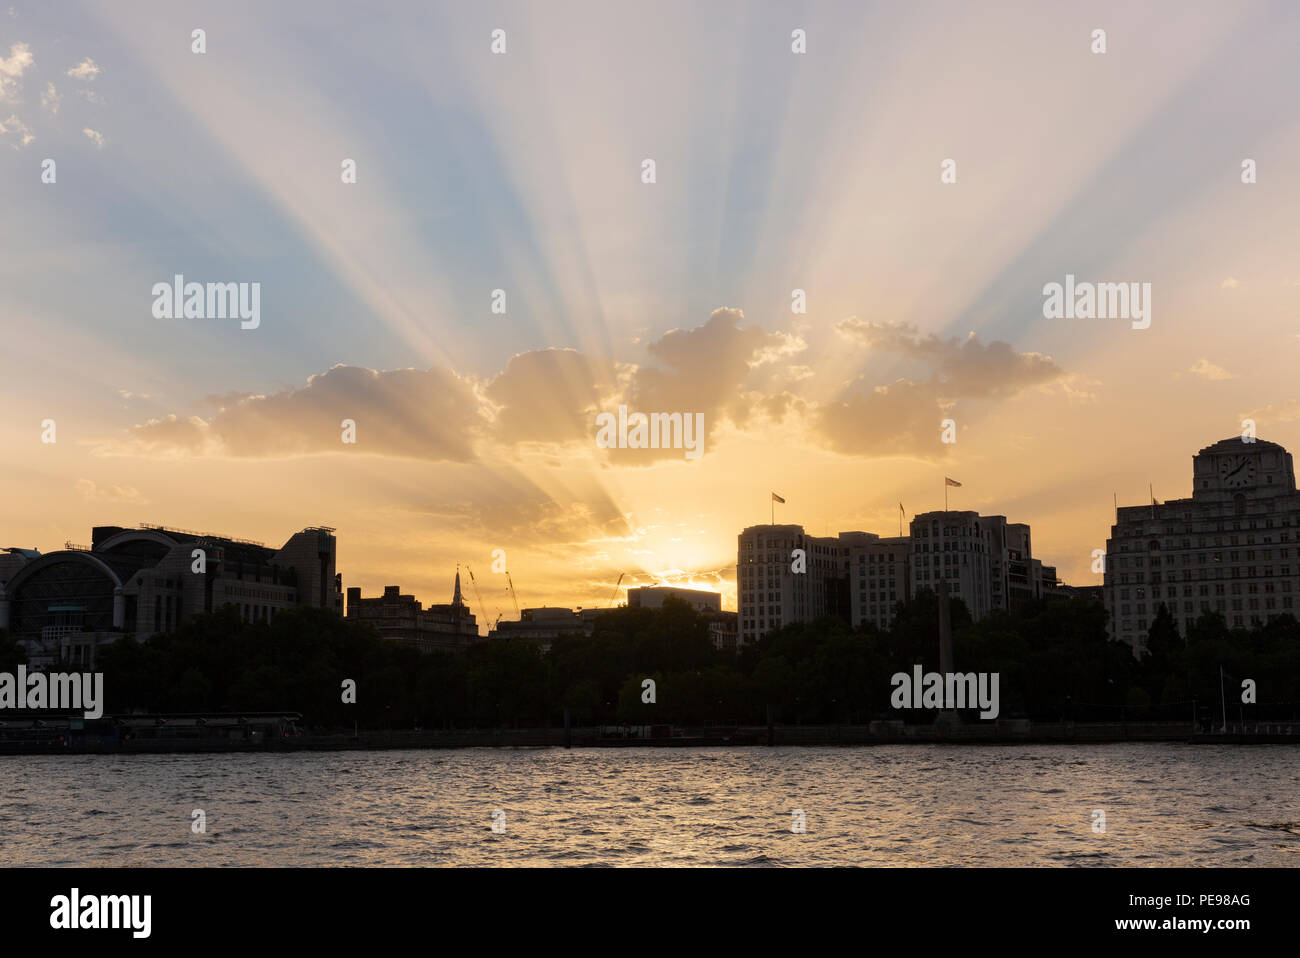 Rayons crépusculaires vu de la rive sud de la Tamise au coucher du soleil à Londres, au Royaume-Uni en août 2018 Banque D'Images